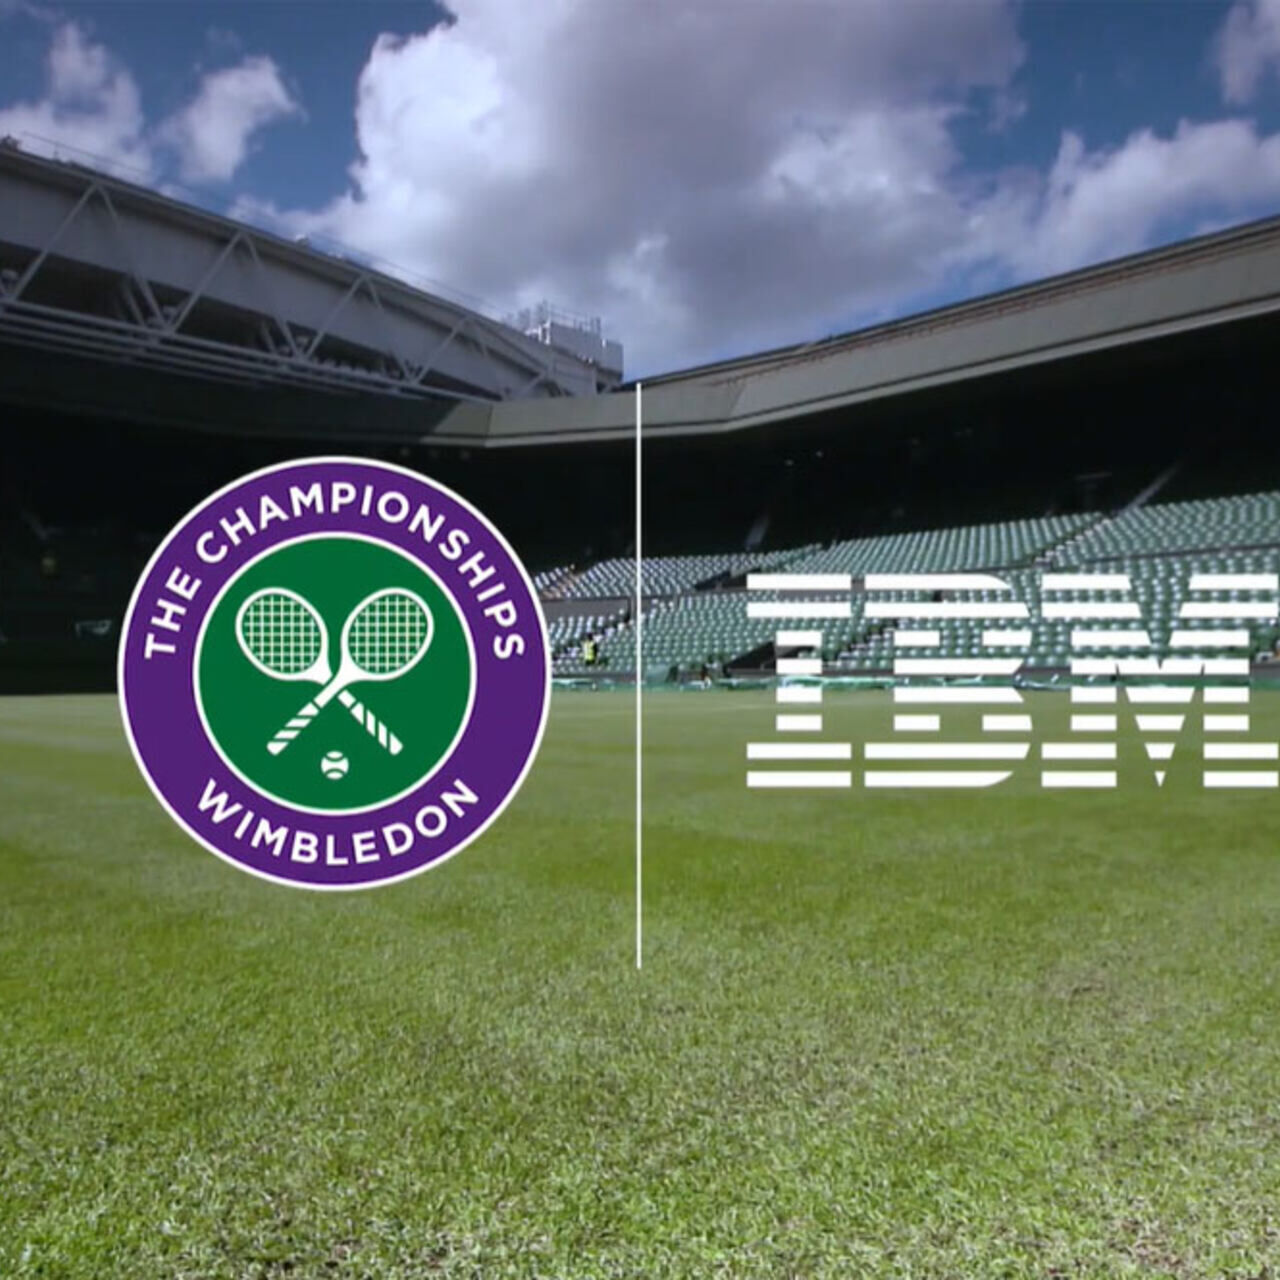 IBM e Wimbledon: la partnership tra IBM e Wimbledon è un'unione che trasforma il mondo del tennis